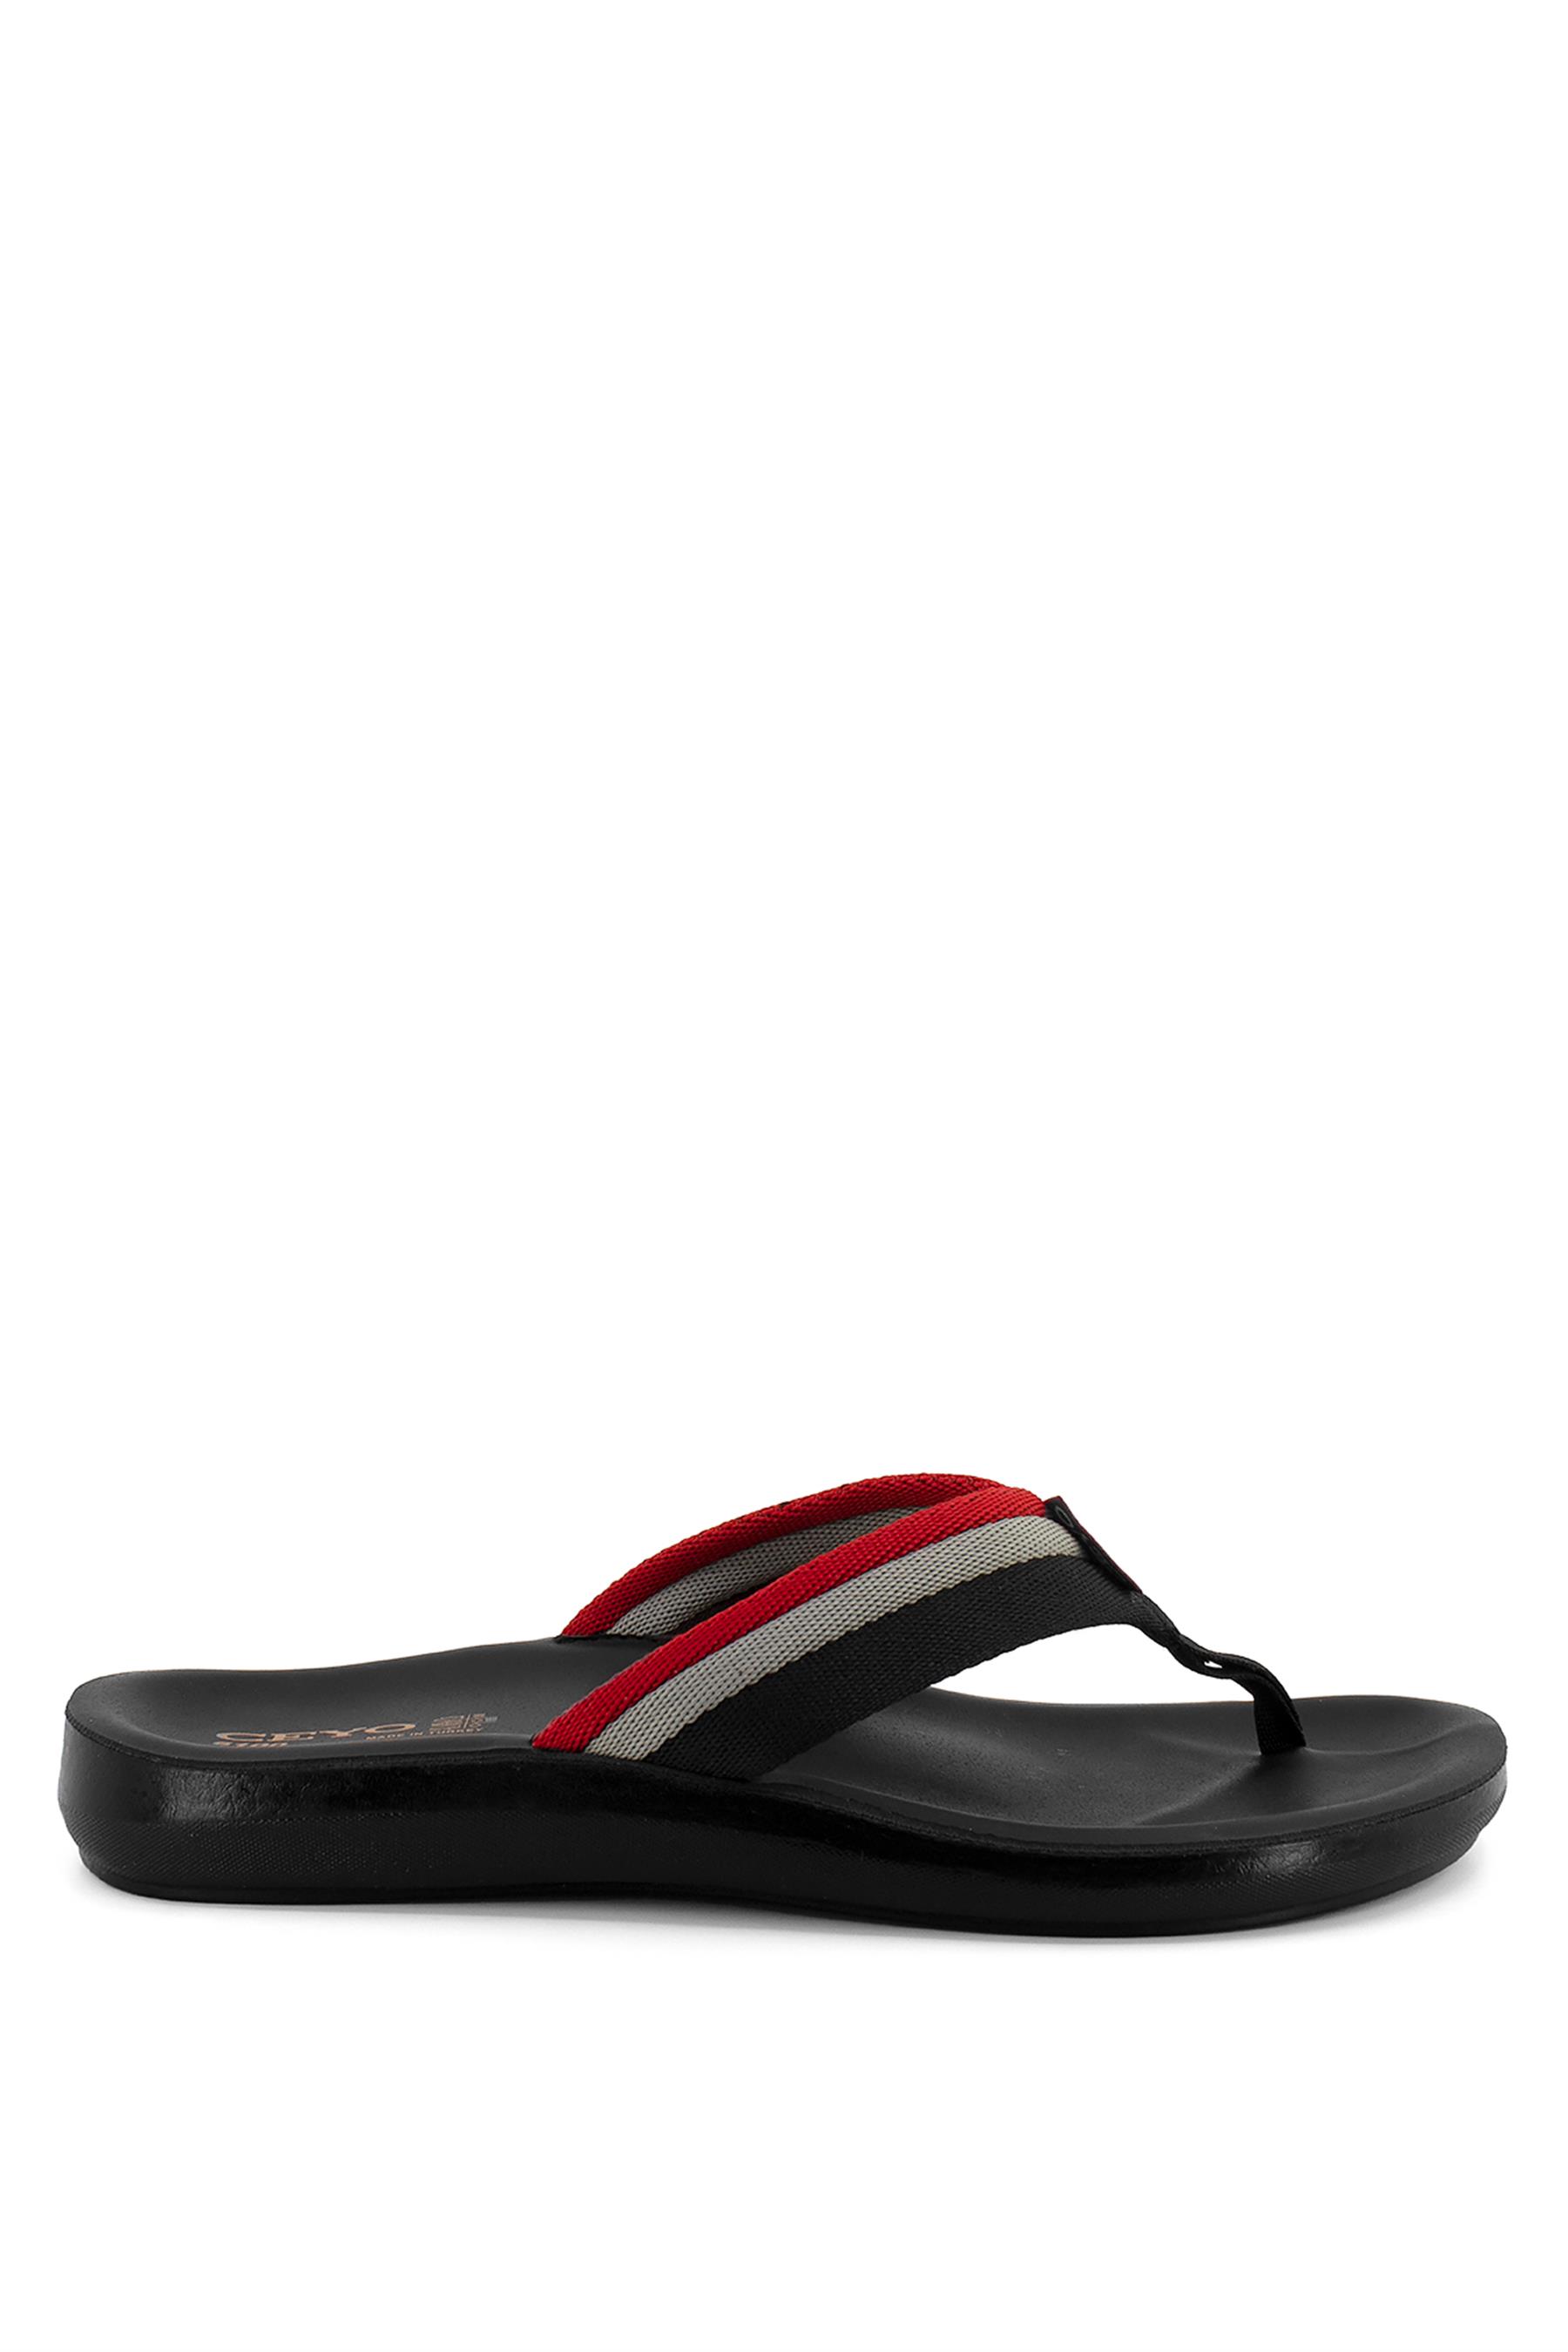 Ceyo 6100-27 Erkek Terlik Siyah - Ayakkabı Fuarı Elit